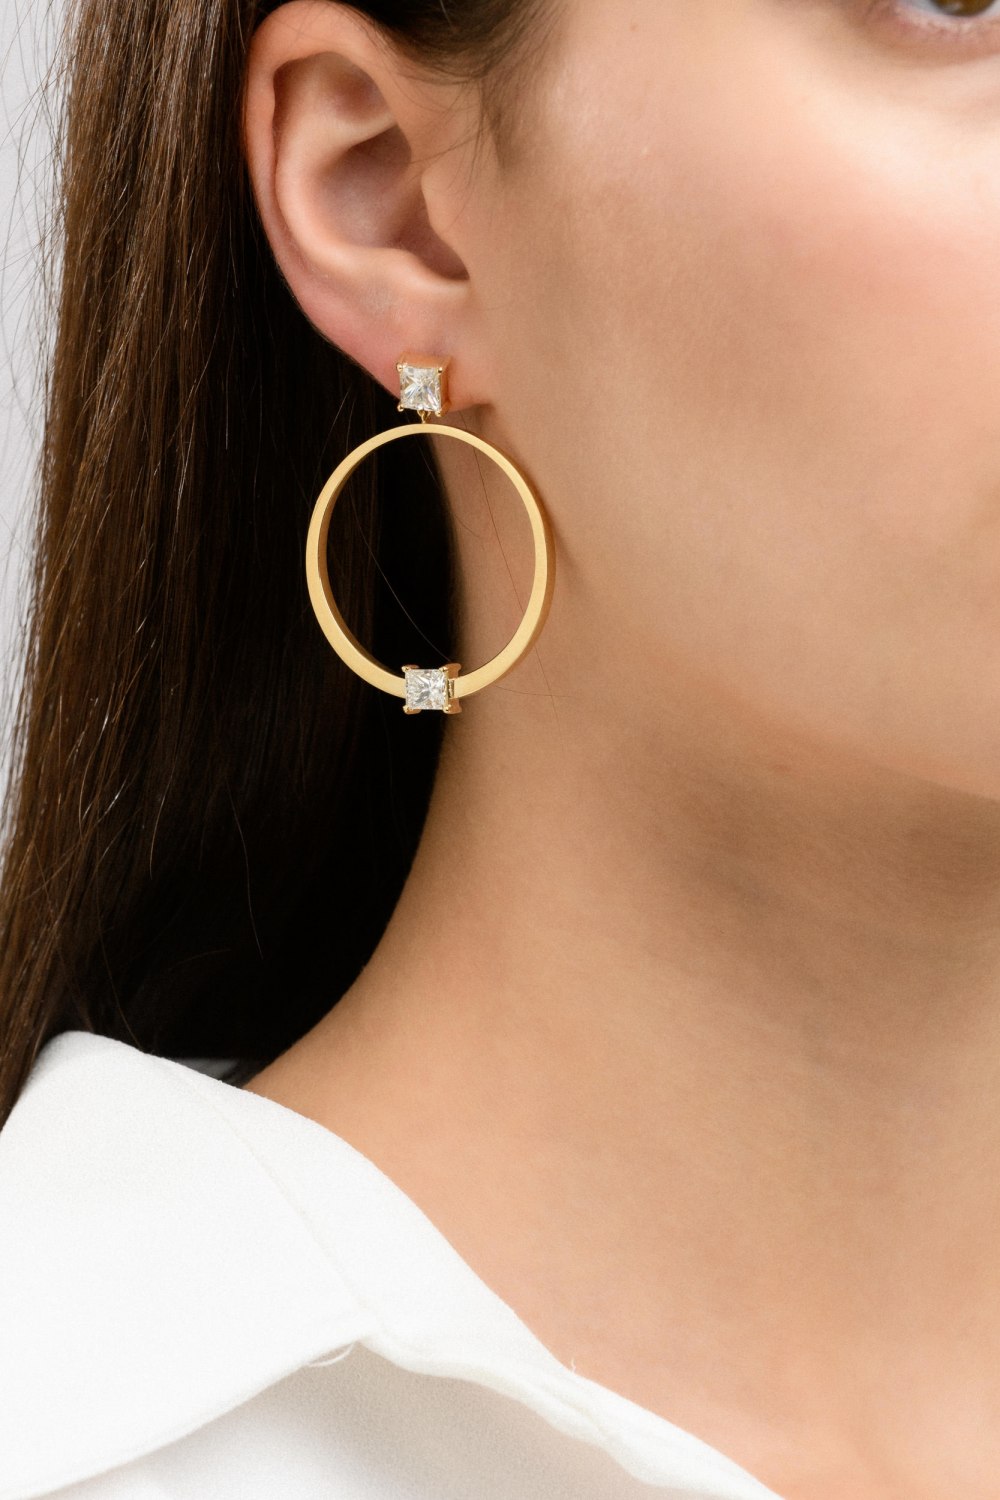 ANASTASIA KESSARIS - Orbit Diamond Earrings